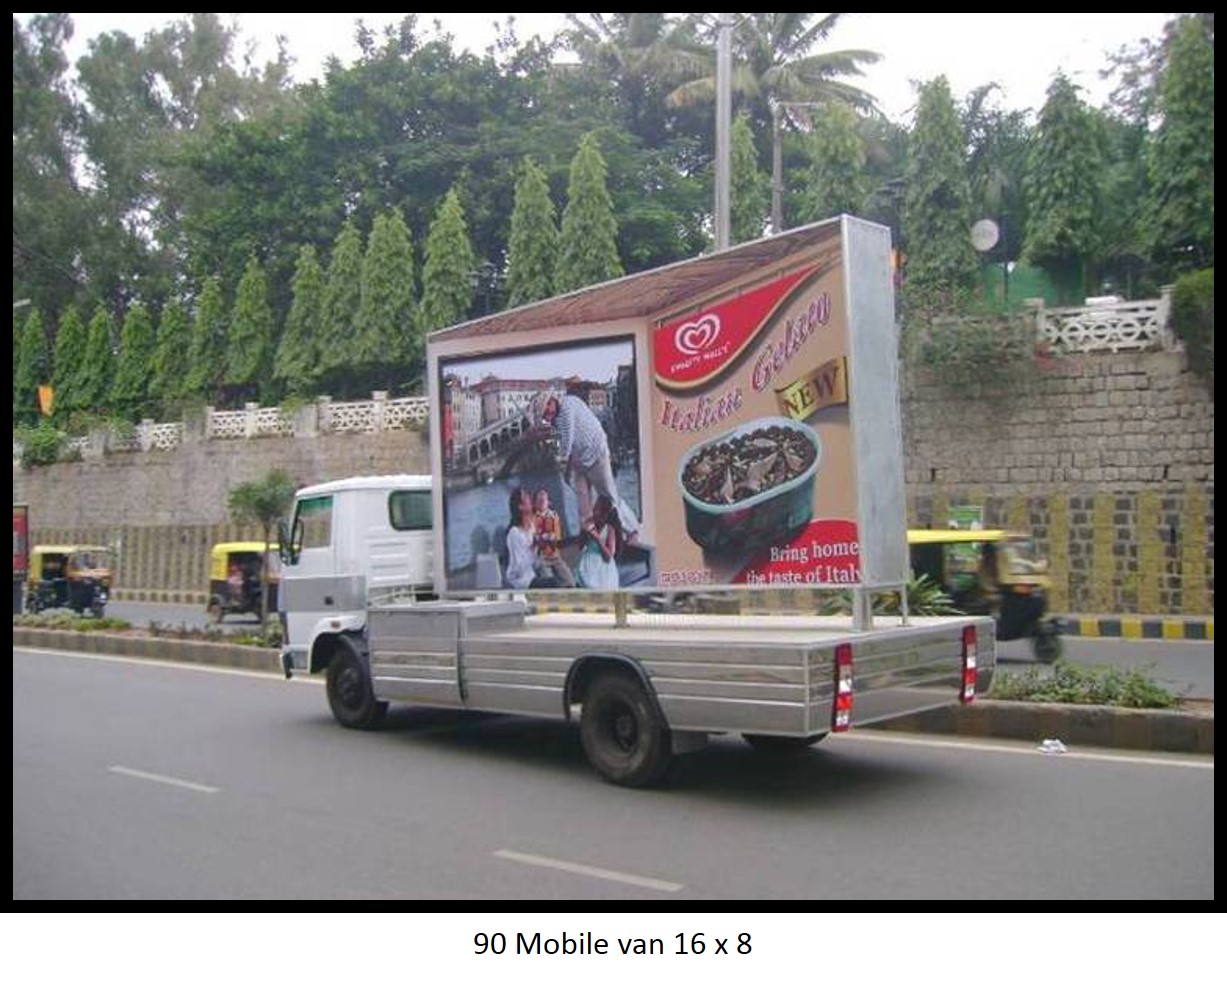 Mobile van, Bengaluru                                                                  